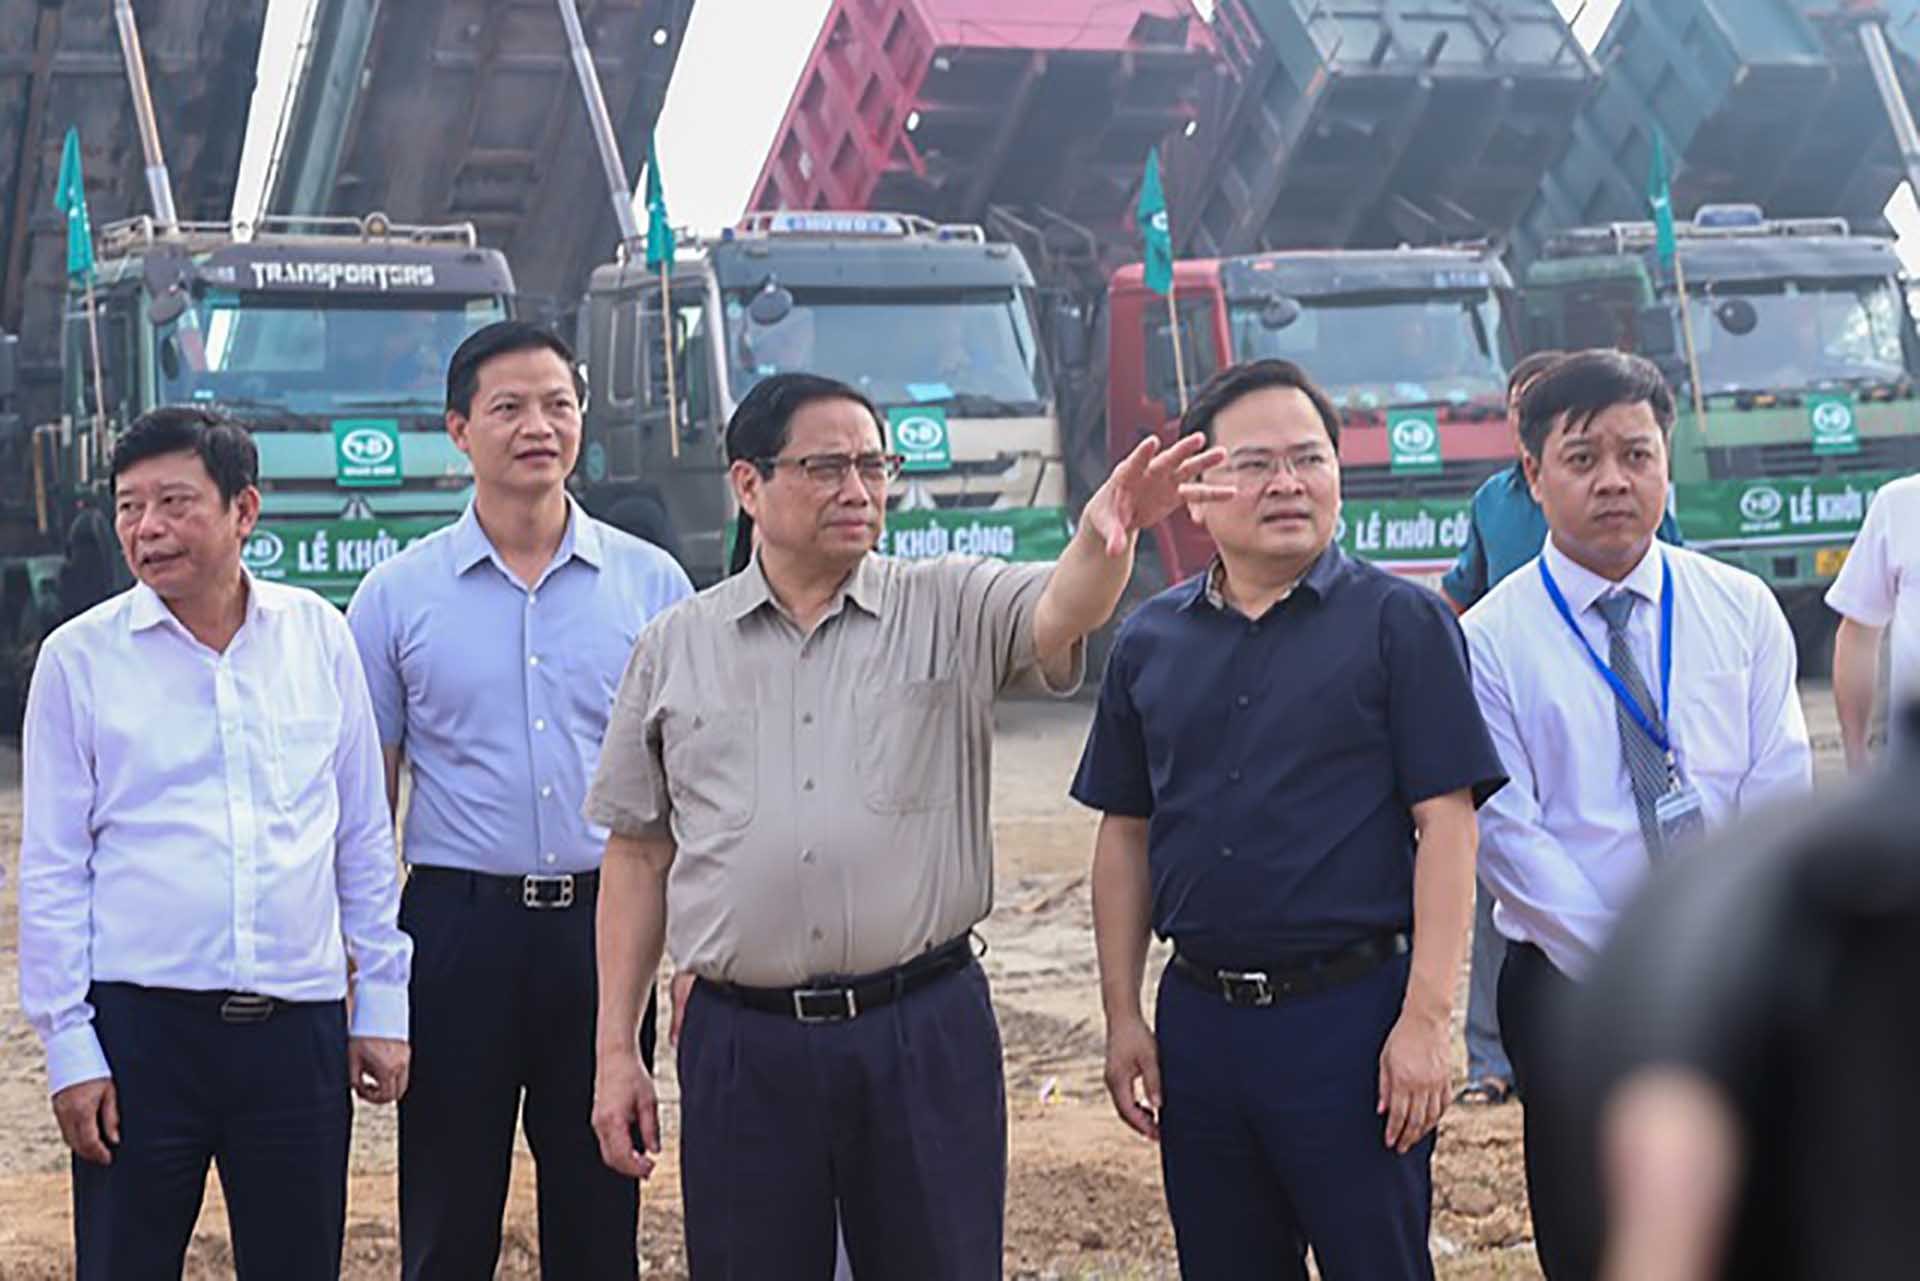 Thủ tướng hoan nghênh lãnh đạo tỉnh Bắc Ninh đã chủ động xây dựng dự án và quyết liệt, nỗ lực triển khai các bước để dự án được khởi công. (Nguồn: VGP)